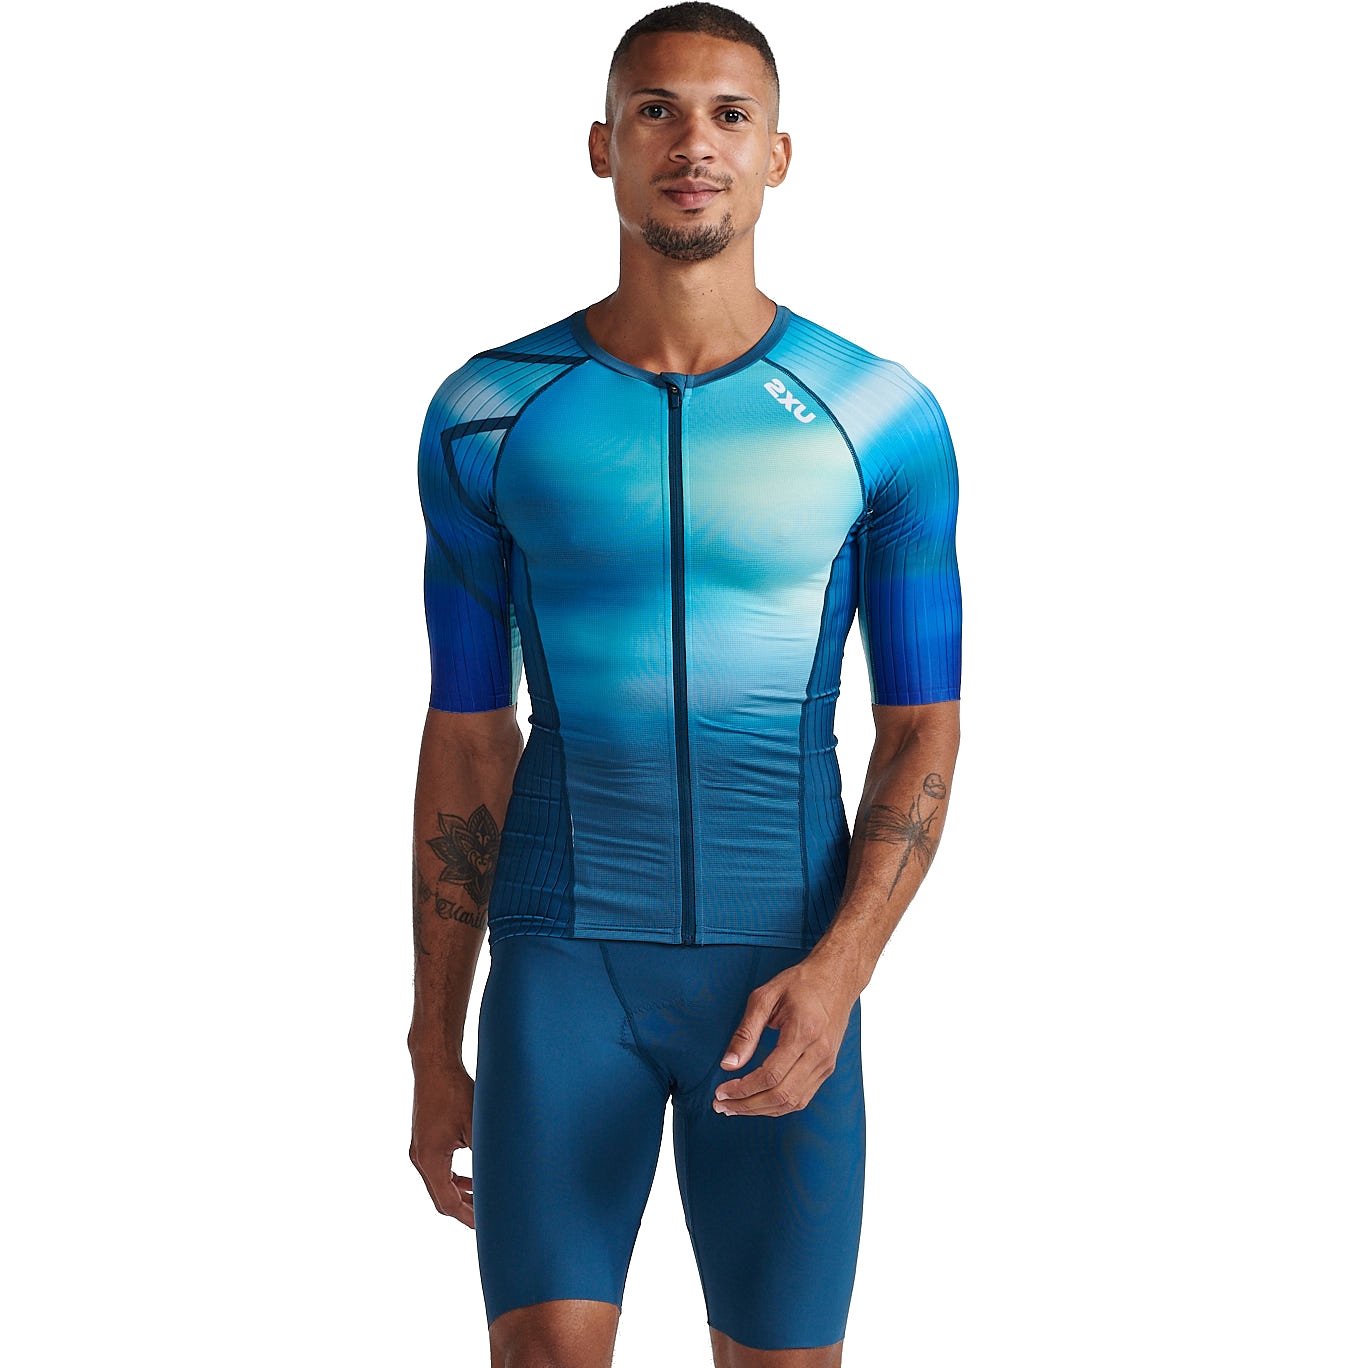 Produktbild von 2XU Aero Triathlon Kurzarm-Shirt Herren - spring green/majola blue